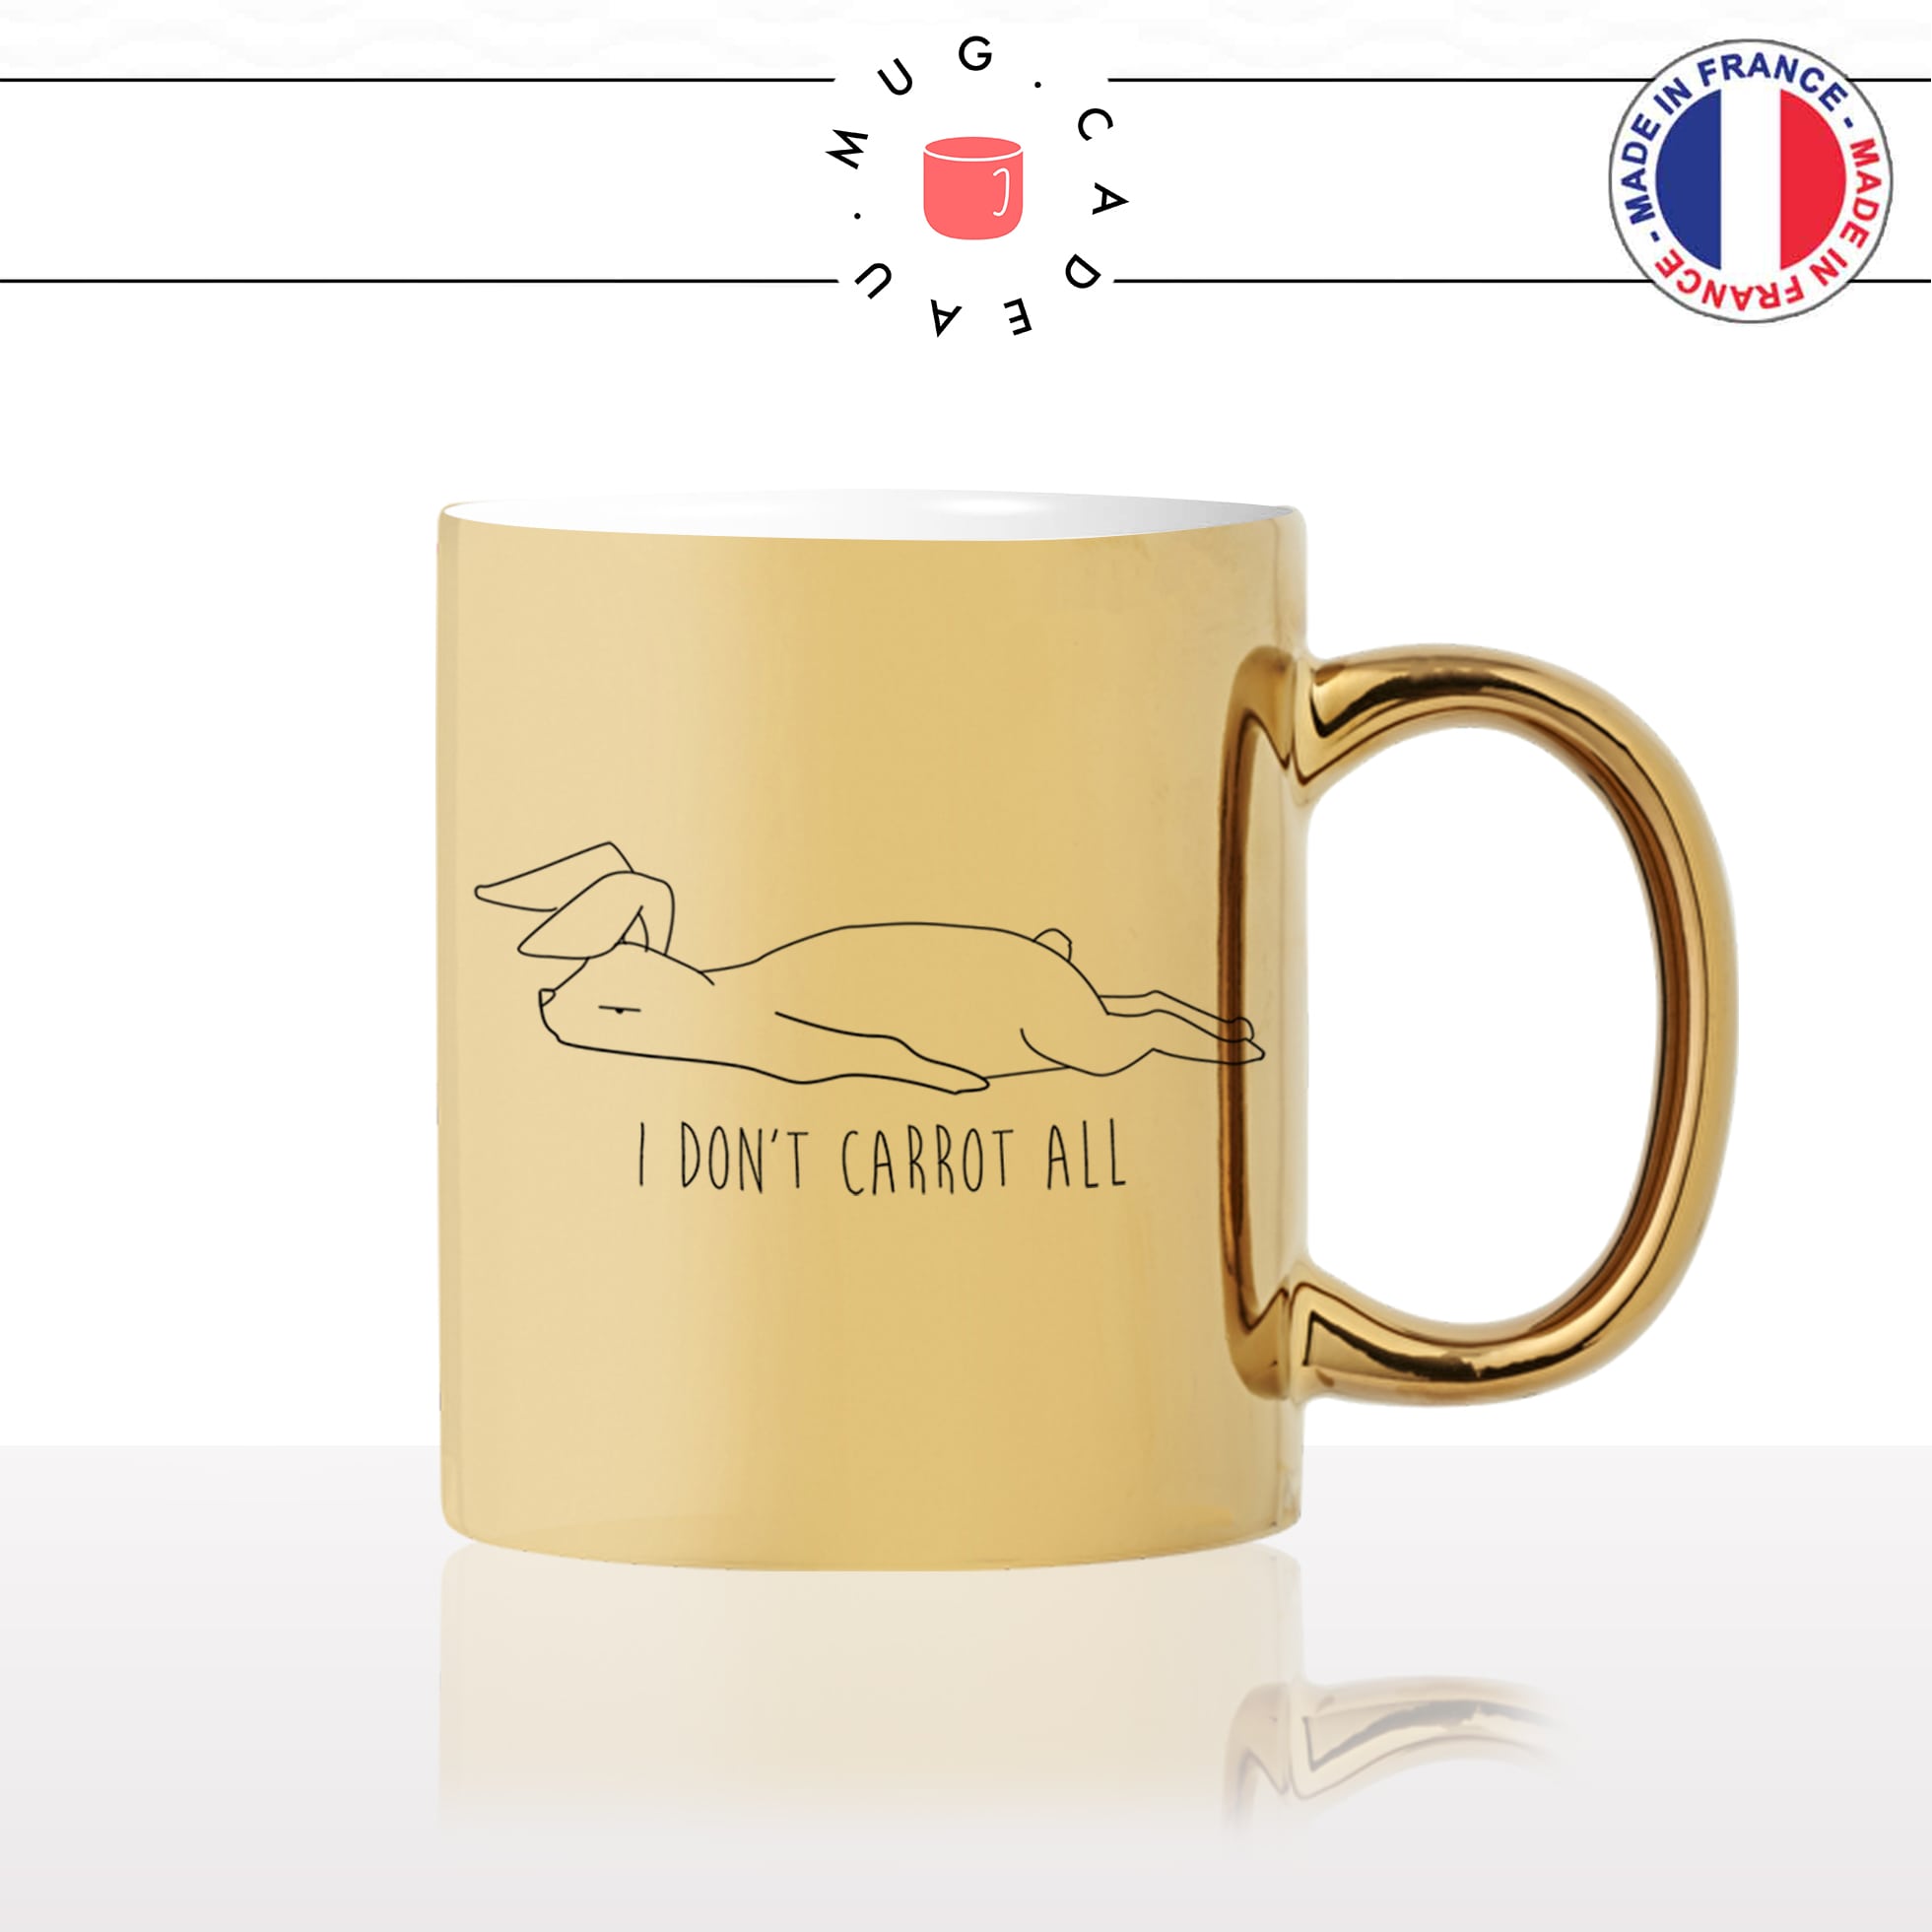 mug-tasse-or-doré-lapin-carrotte-humour-dessin-drole-mignon-animal-noir-fun-café-thé-idée-cadeau-original-personnalisé-gold2-min